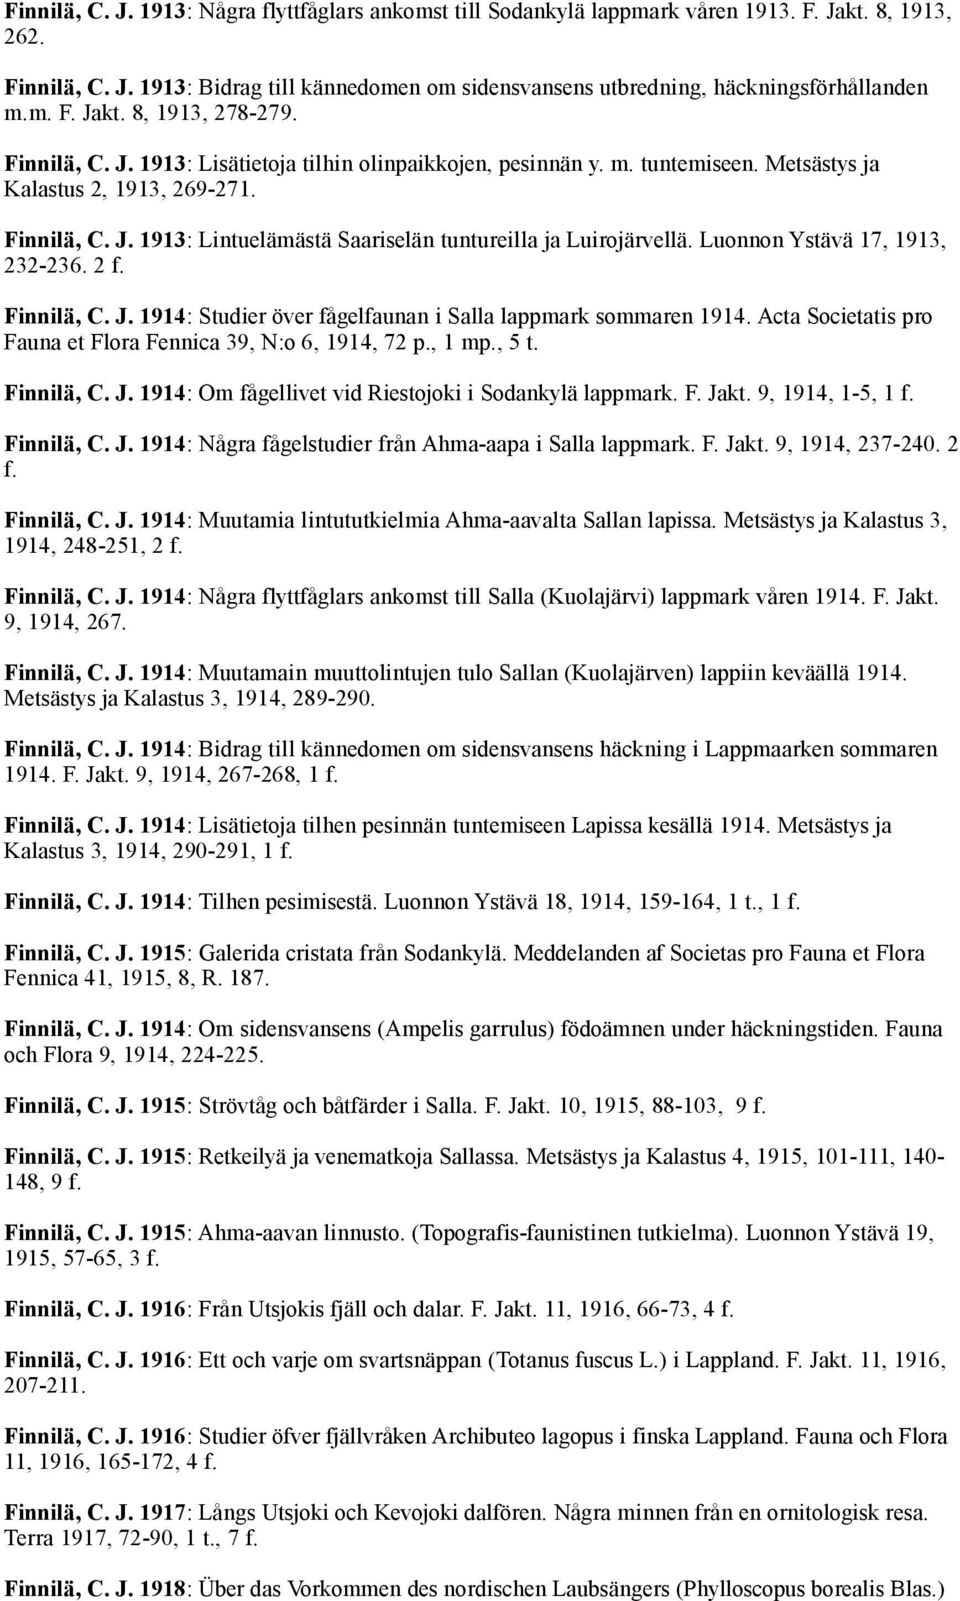 Luonnon Ystävä 17, 1913, 232-236. 2 f. Finnilä, C. J. 1914: Studier över fågelfaunan i Salla lappmark sommaren 1914. Acta Societatis pro Fauna et Flora Fennica 39, N:o 6, 1914, 72 p., 1 mp., 5 t.